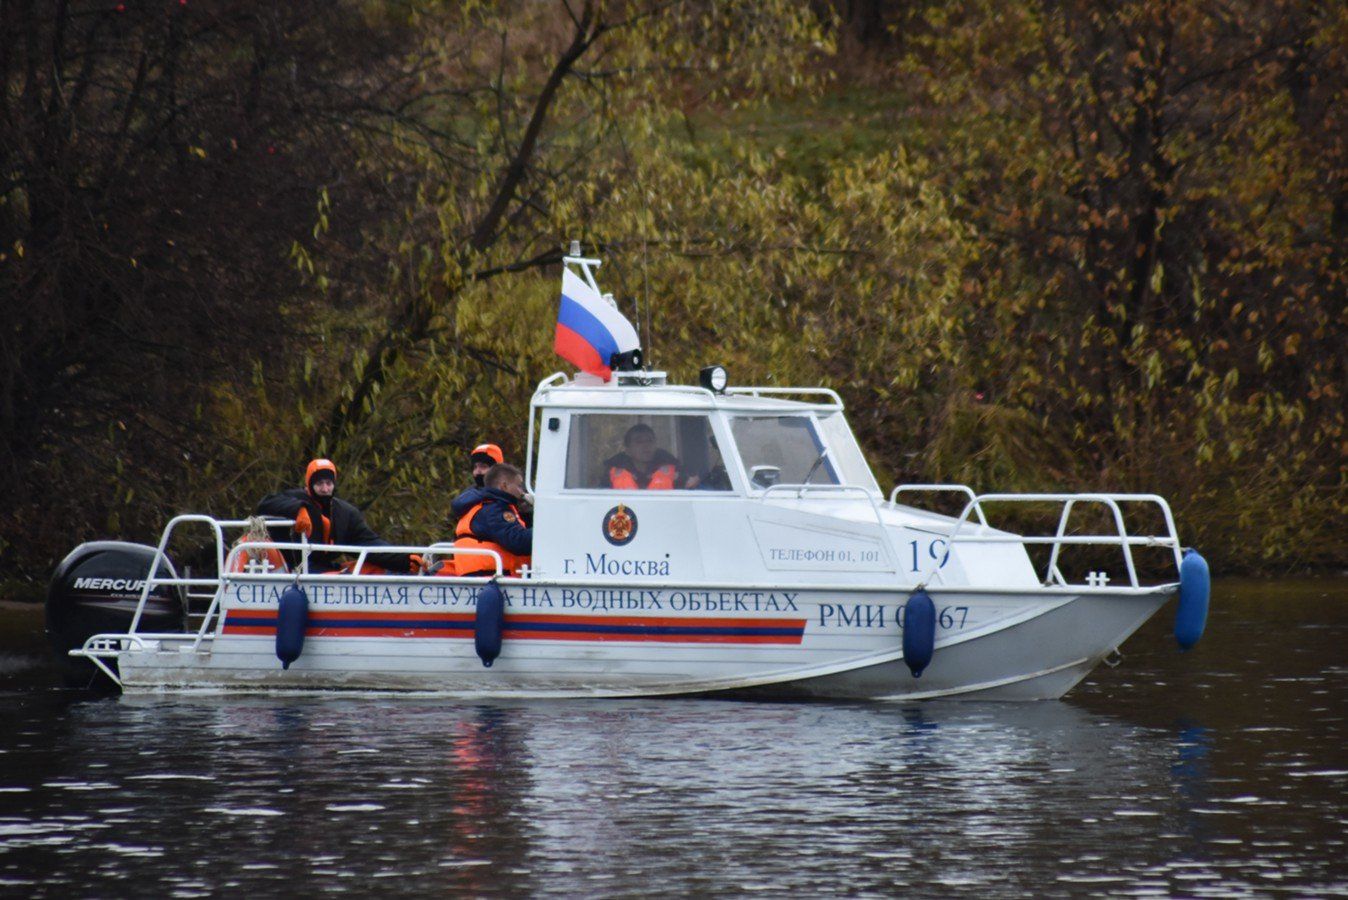 Спасатели Московской городской поисково-спасательной службы на водных объектах перешли на усиленный режим работы